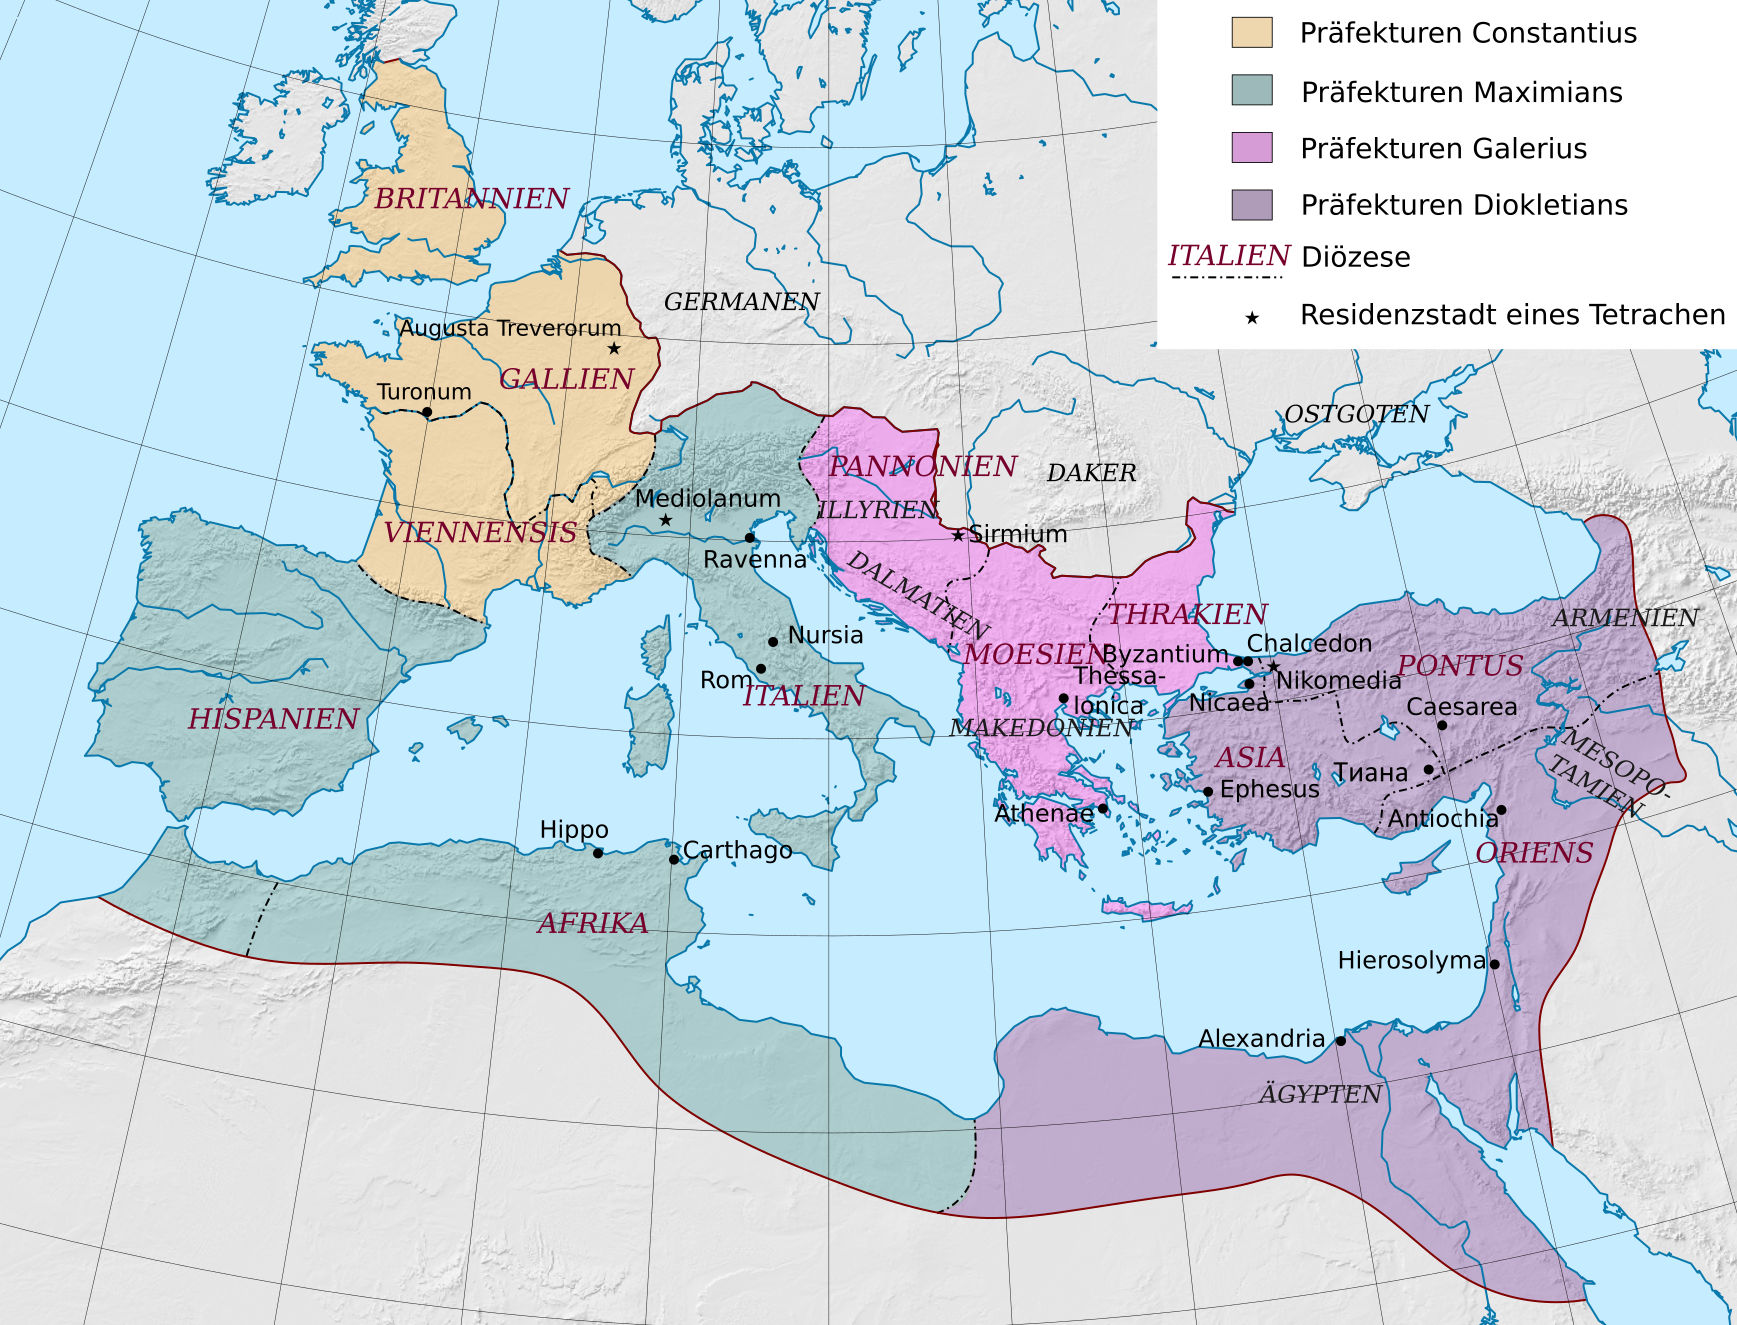 Tetrarchie im Römischen Reich ab 293